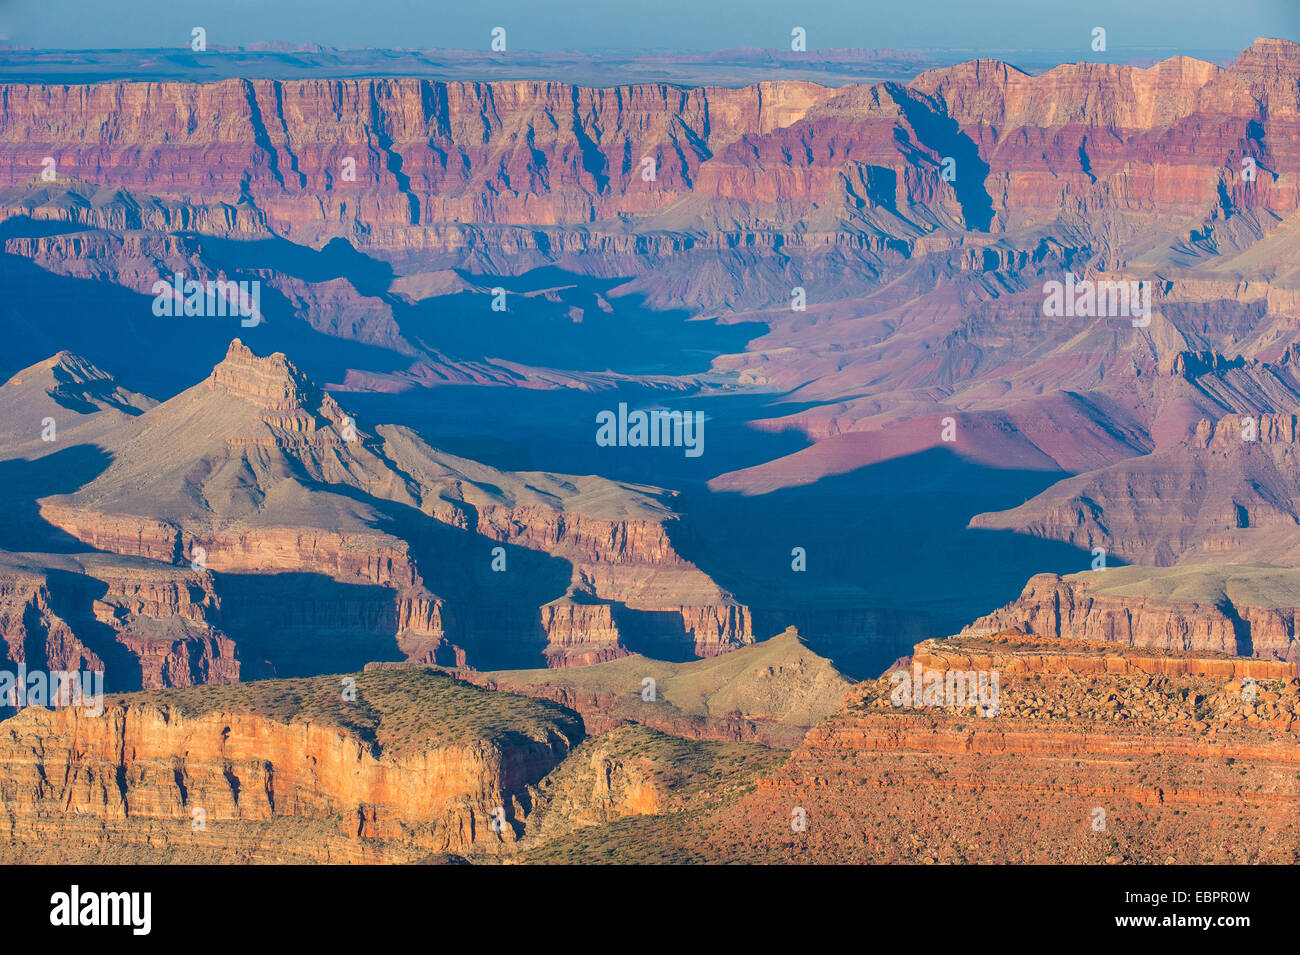 Coucher de soleil sur la rive sud du Grand Canyon, UNESCO World Heritage Site, Arizona, États-Unis d'Amérique, Amérique du Nord Banque D'Images